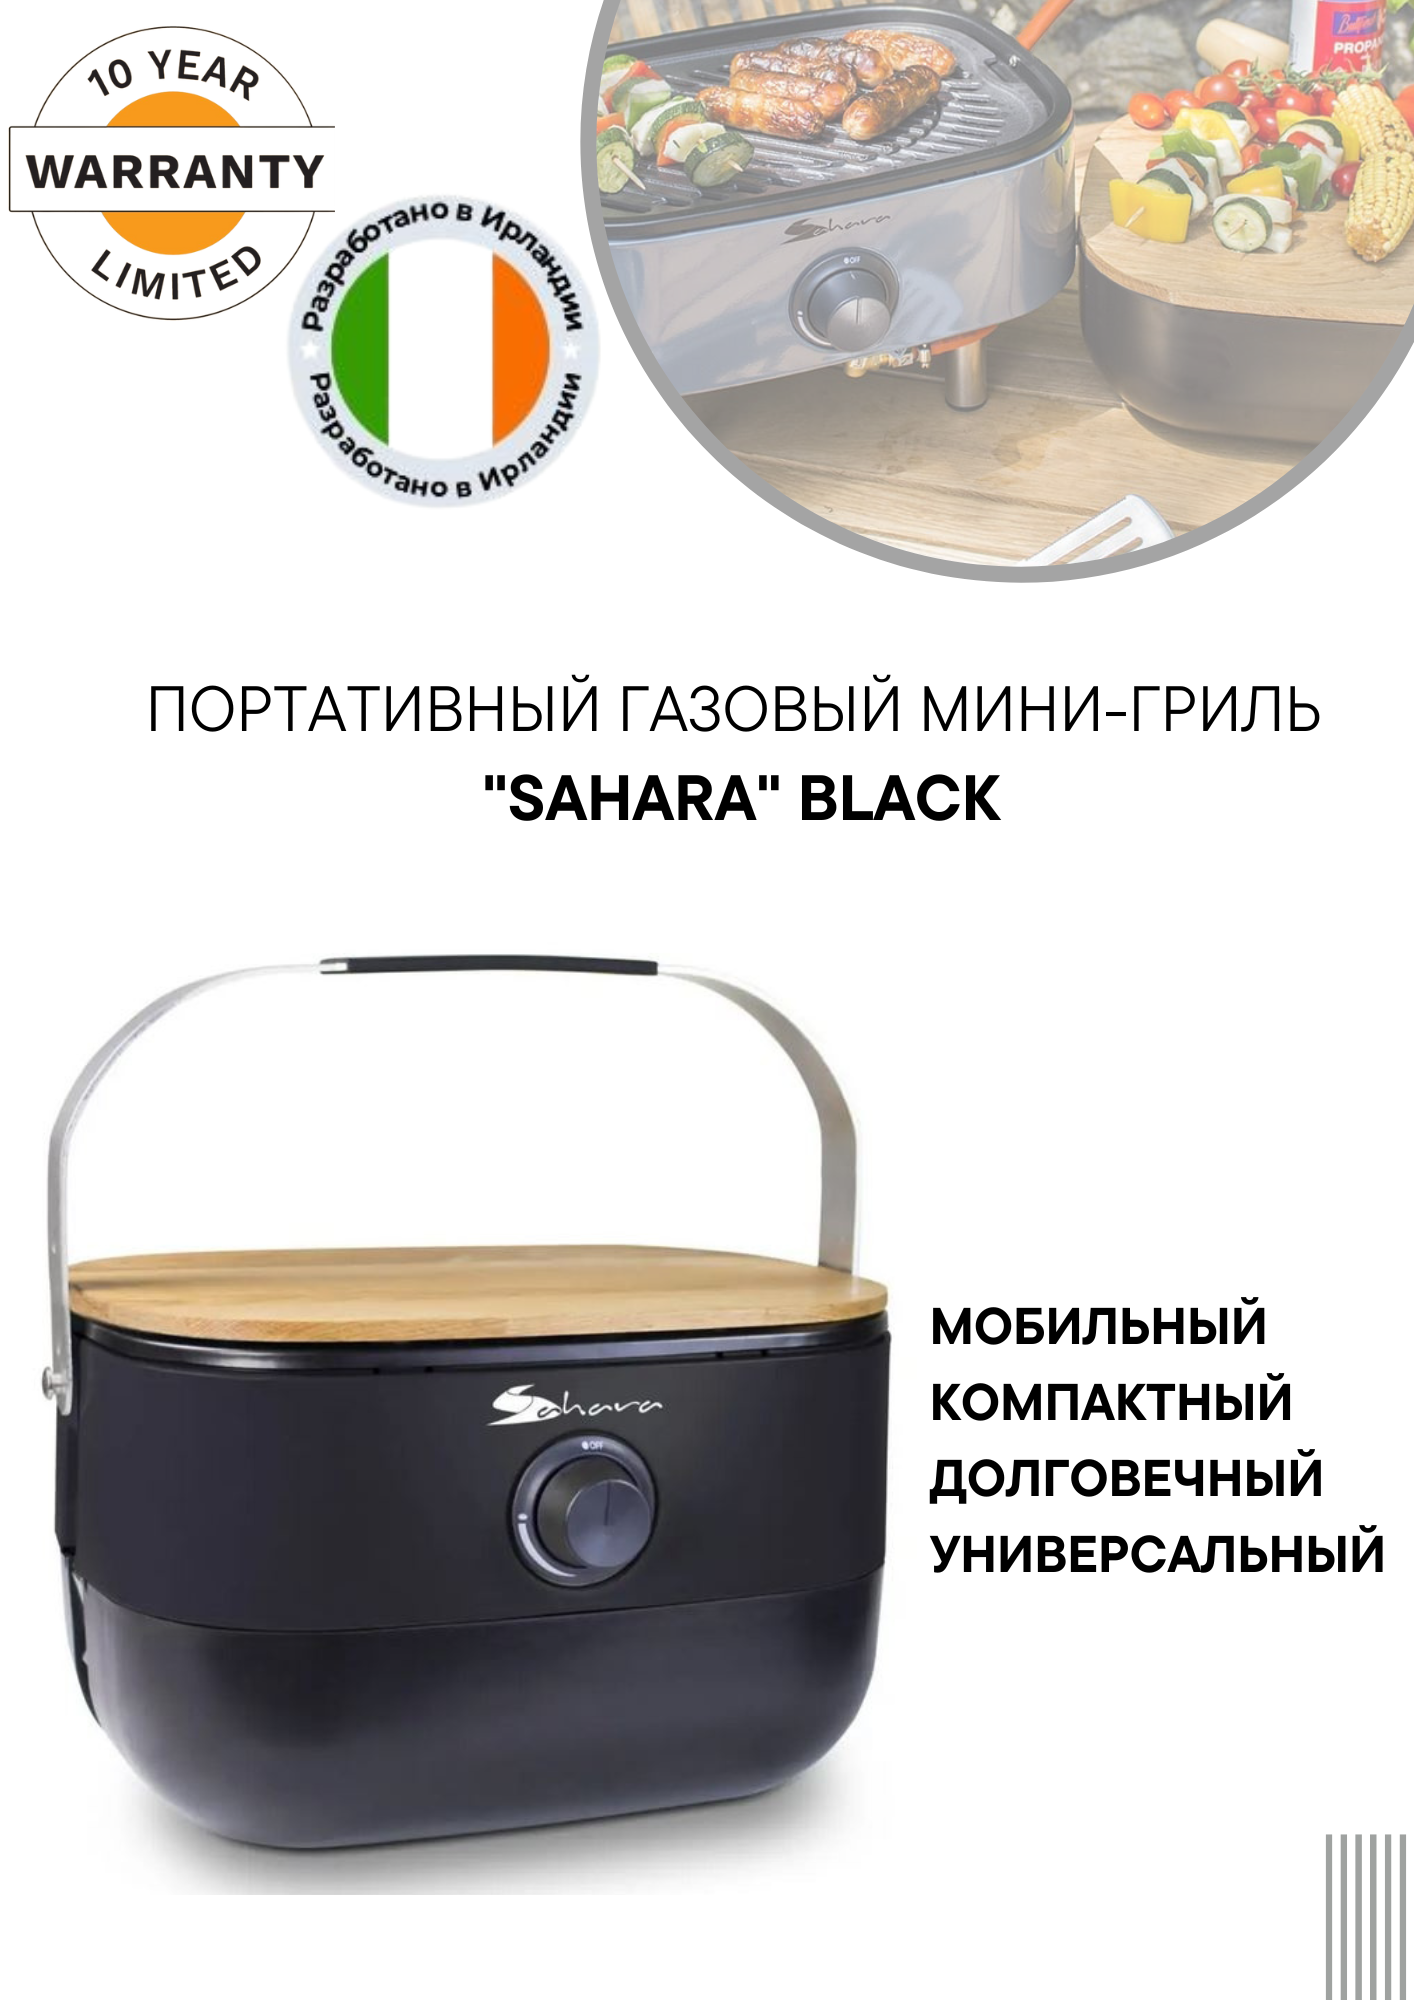 Портативный газовый мини гриль-барбекю "Sahara" Black